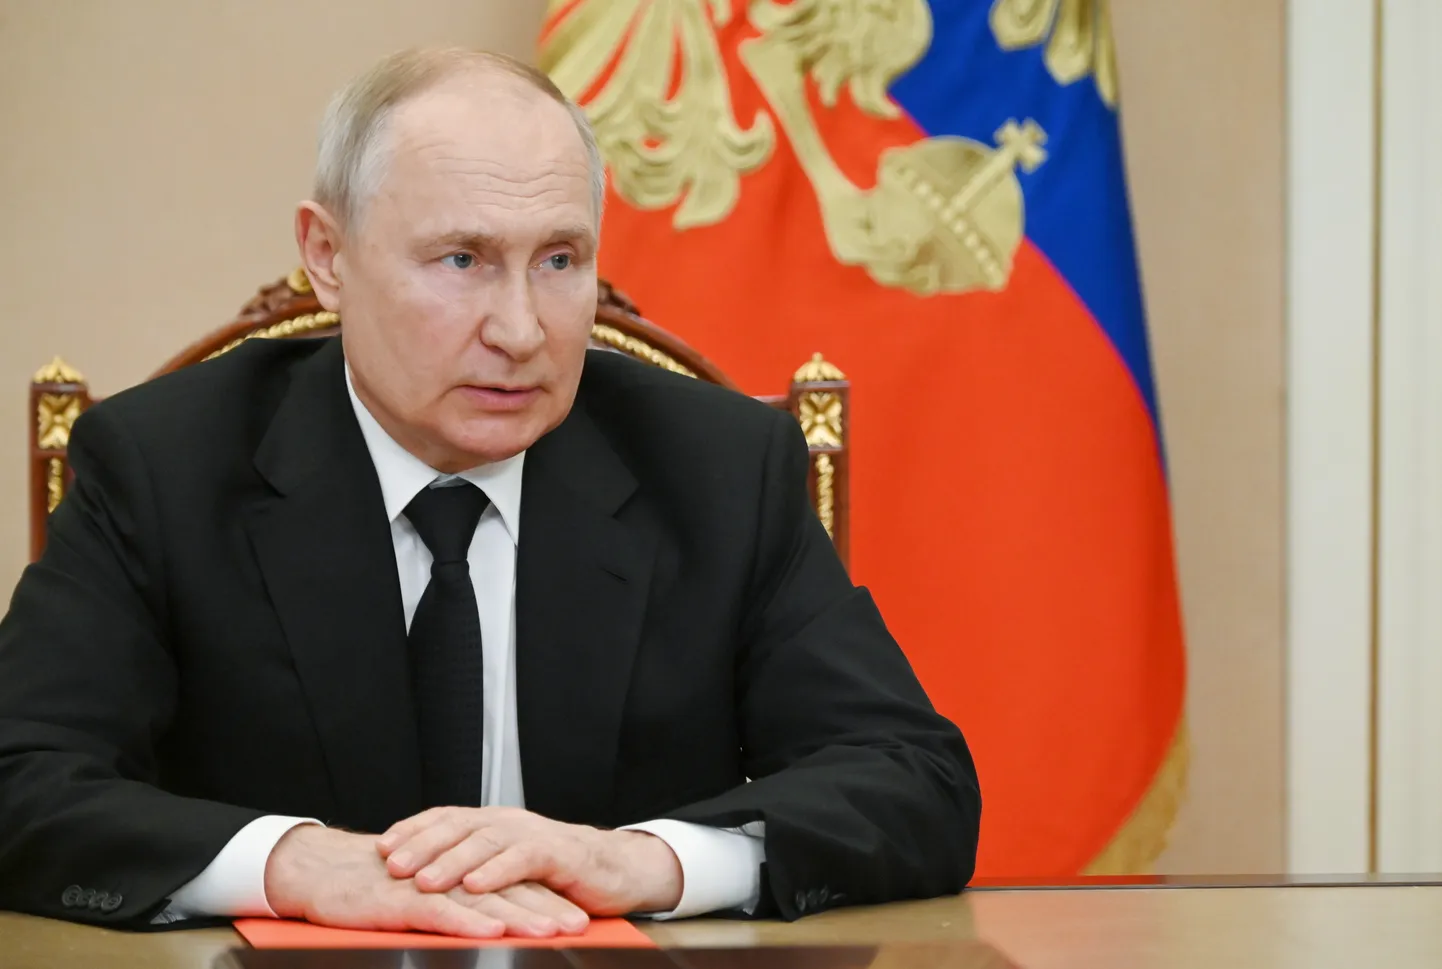 Krievijas autokrāts Vladimirs Putins.